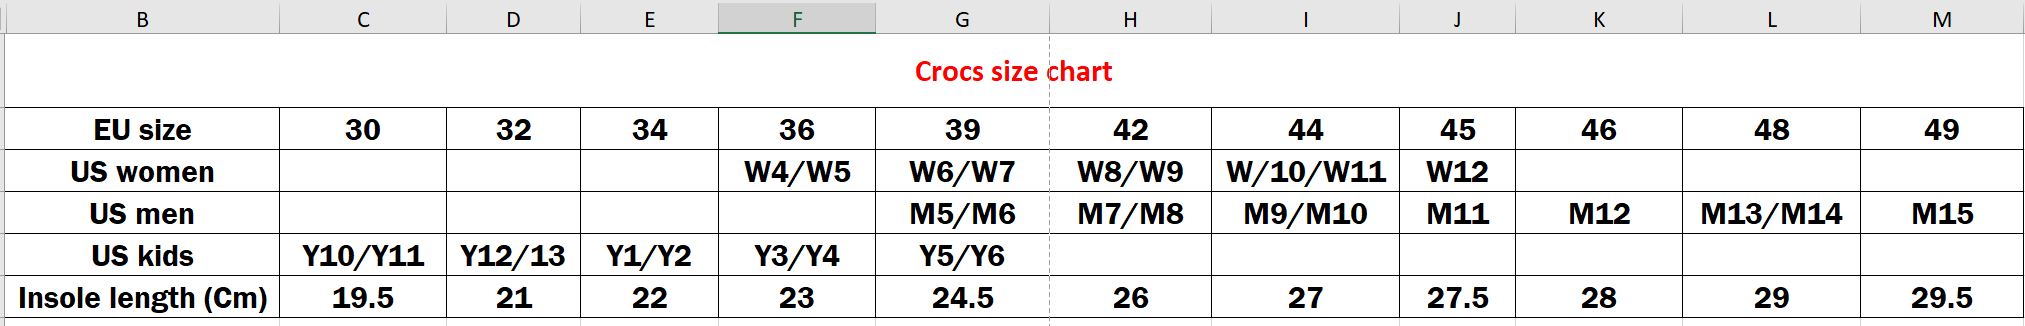 croc shoe sizes